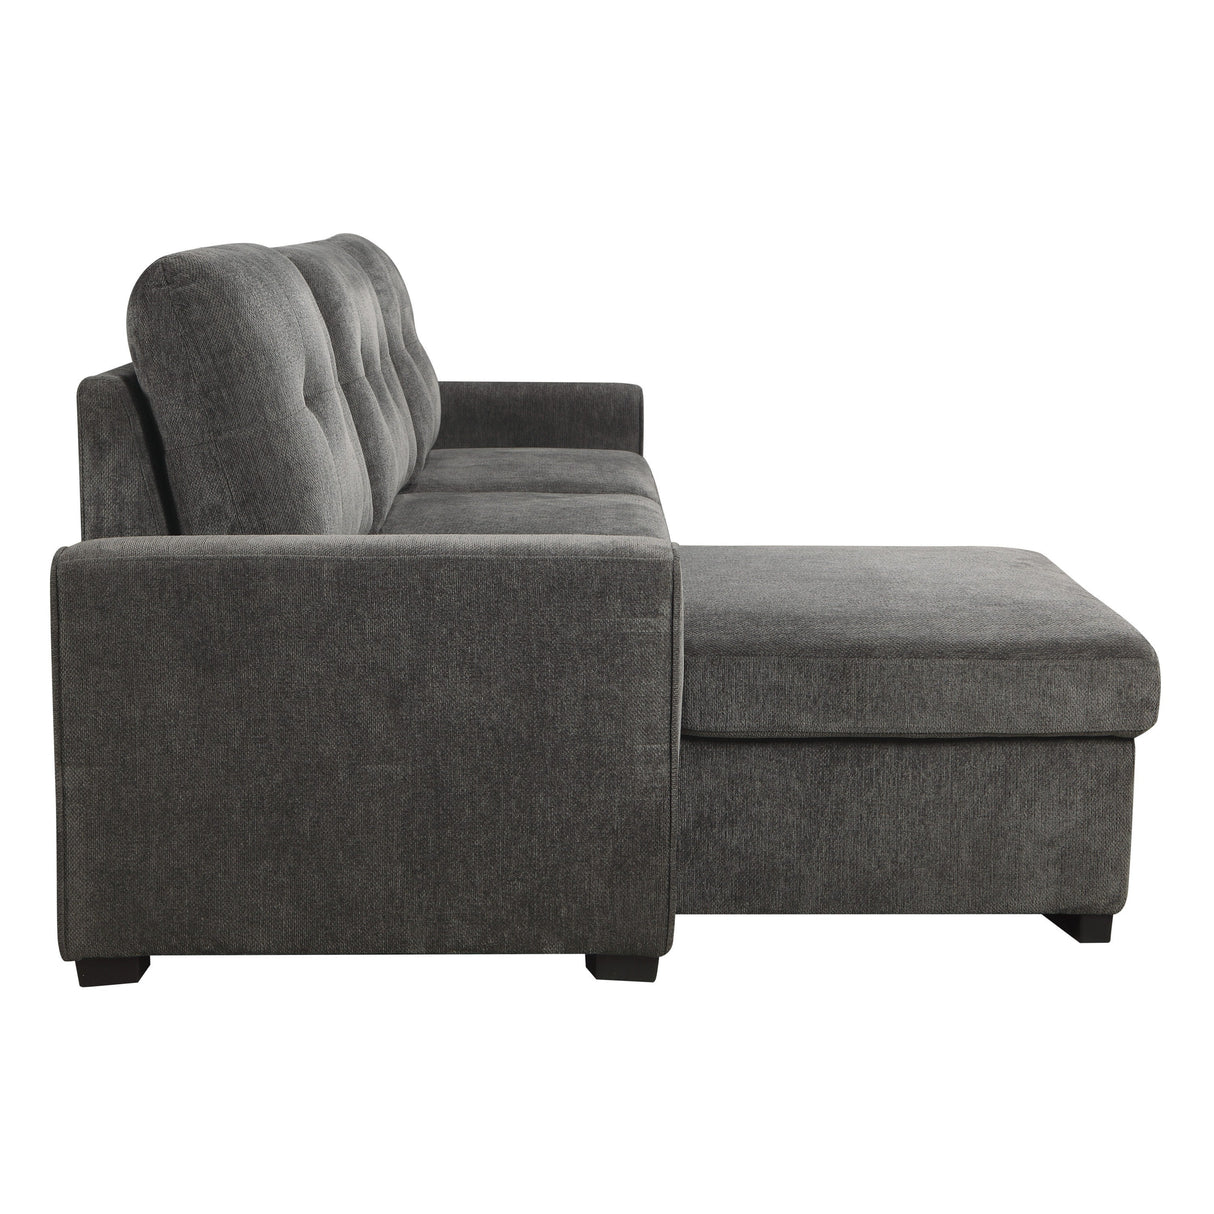 Carolina Dark Gray Reversible Storage Sleeper Sofa Chaise